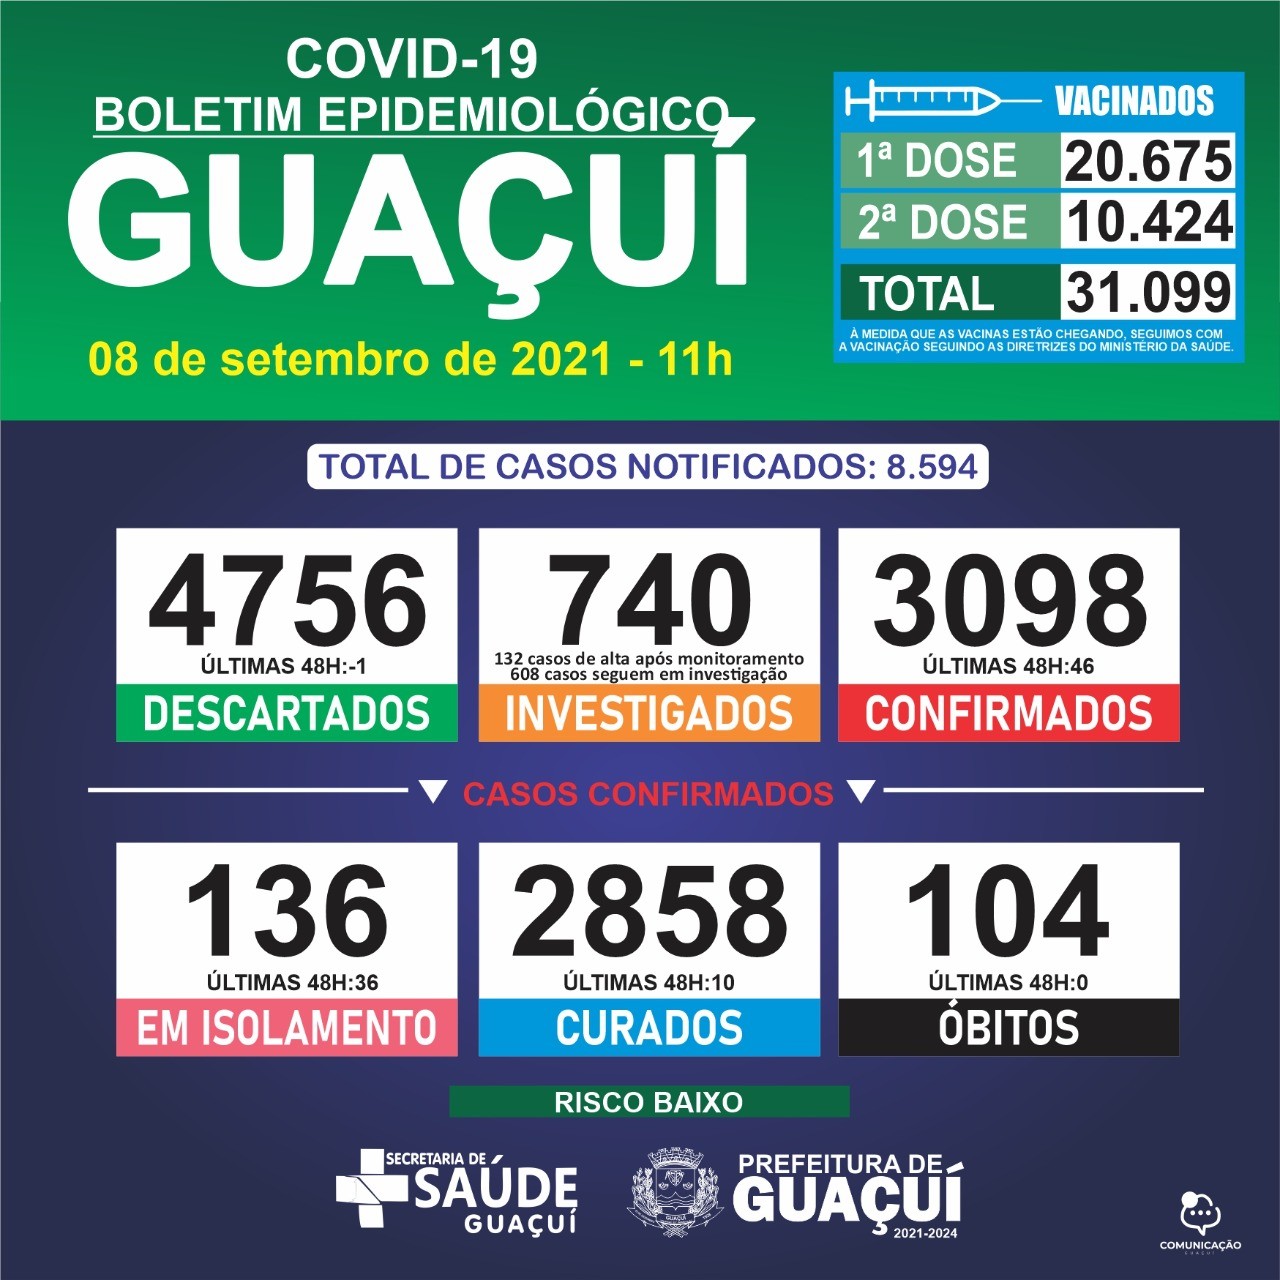 Boletim Epidemiológico 08/09/21: Guaçuí registra 46 casos confirmados e 10 curados nas últimas 48 horas